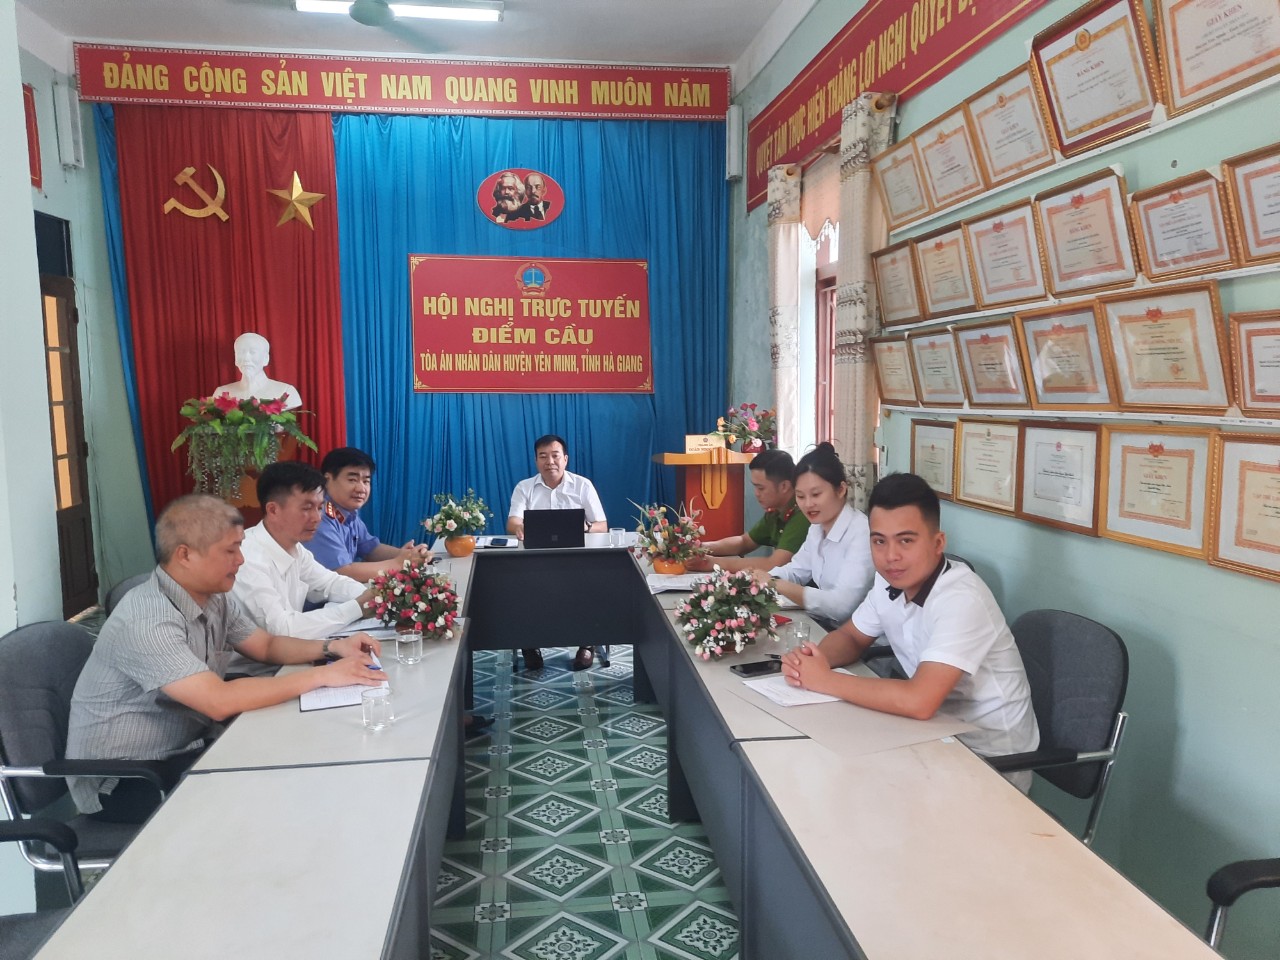 Các cơ quan tiến hành tố tụng huyện Yên Minh tham dự Hội nghị tập huấn trực tuyến “Tiền điện tử”